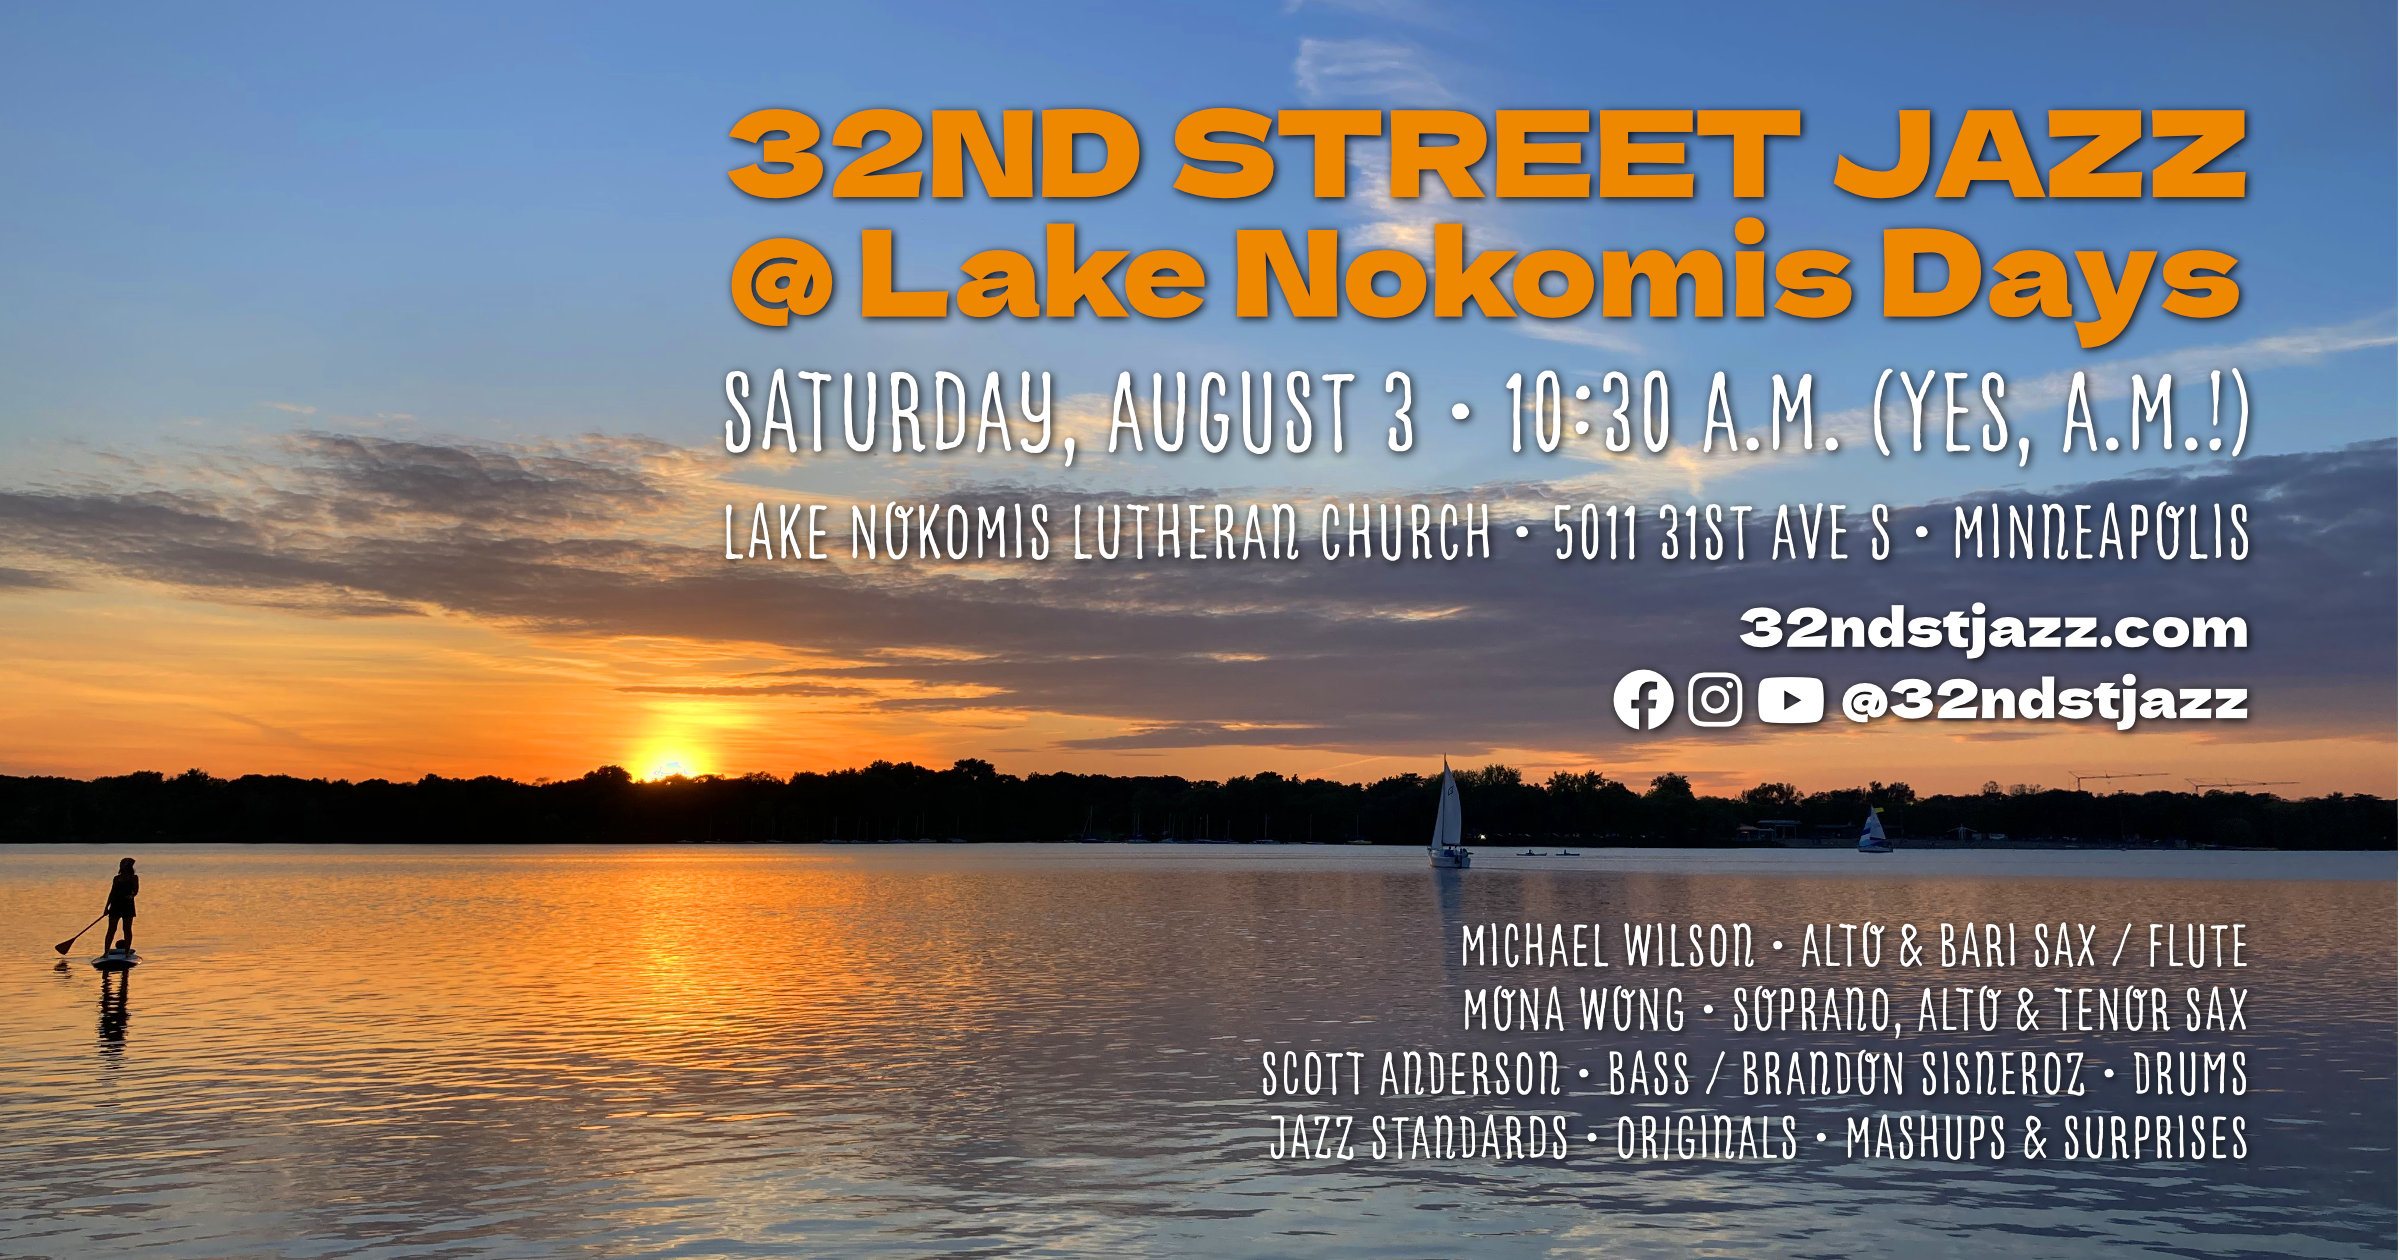 Lake Nokomis Days - Saturday, August 3 - 10:30 AM - Lake Nokomis Lutheran Church